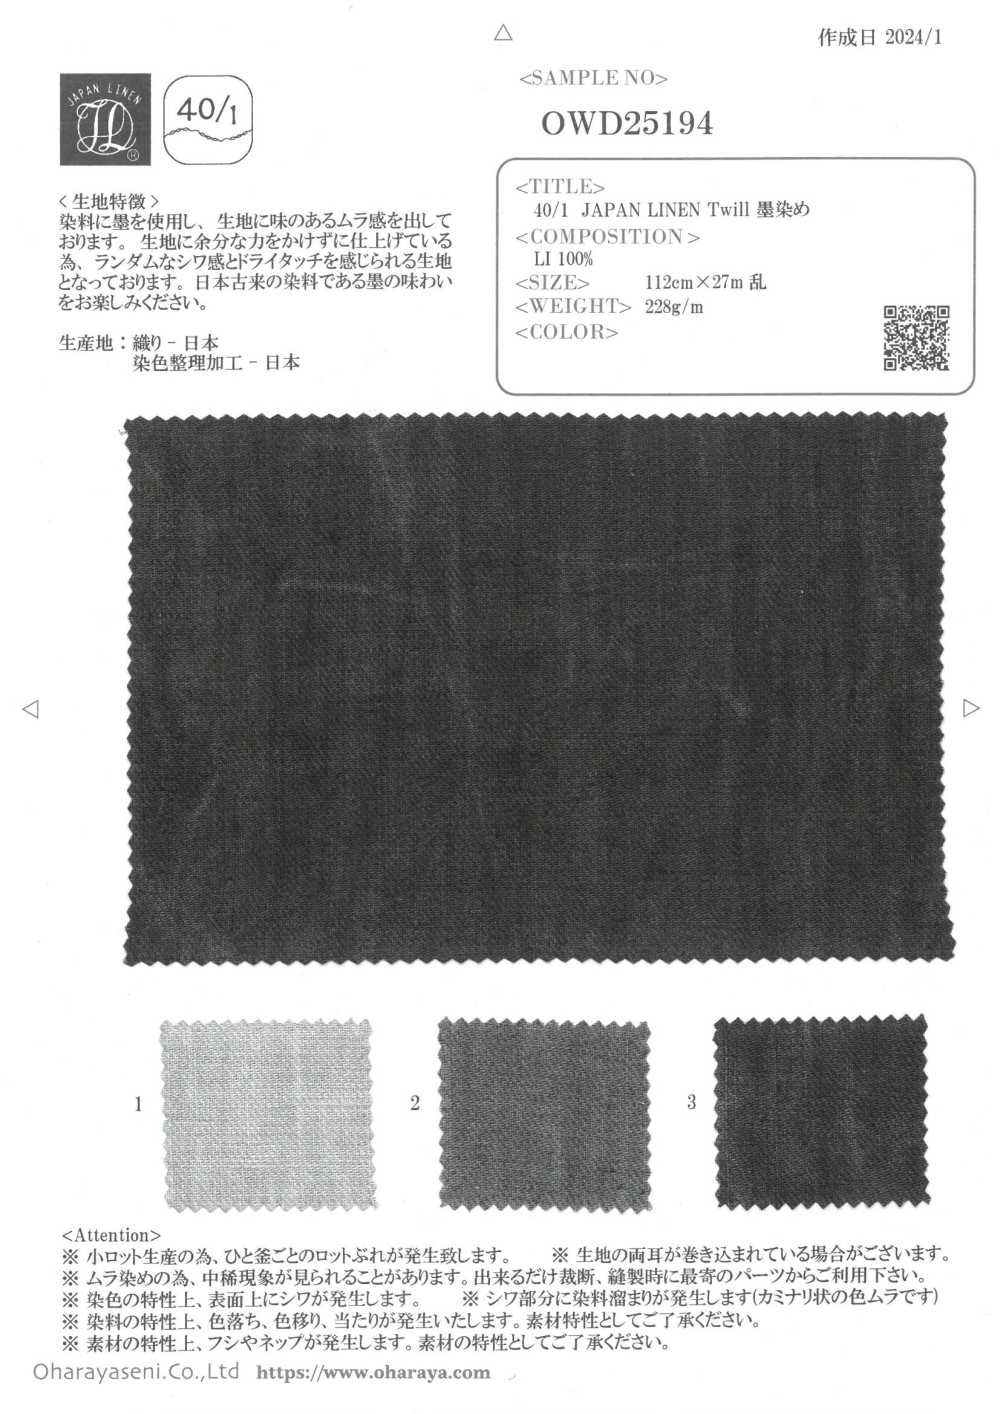 OWD25194 40/1 JAPAN LINEN 斜纹 墨染[面料] 小原屋繊維